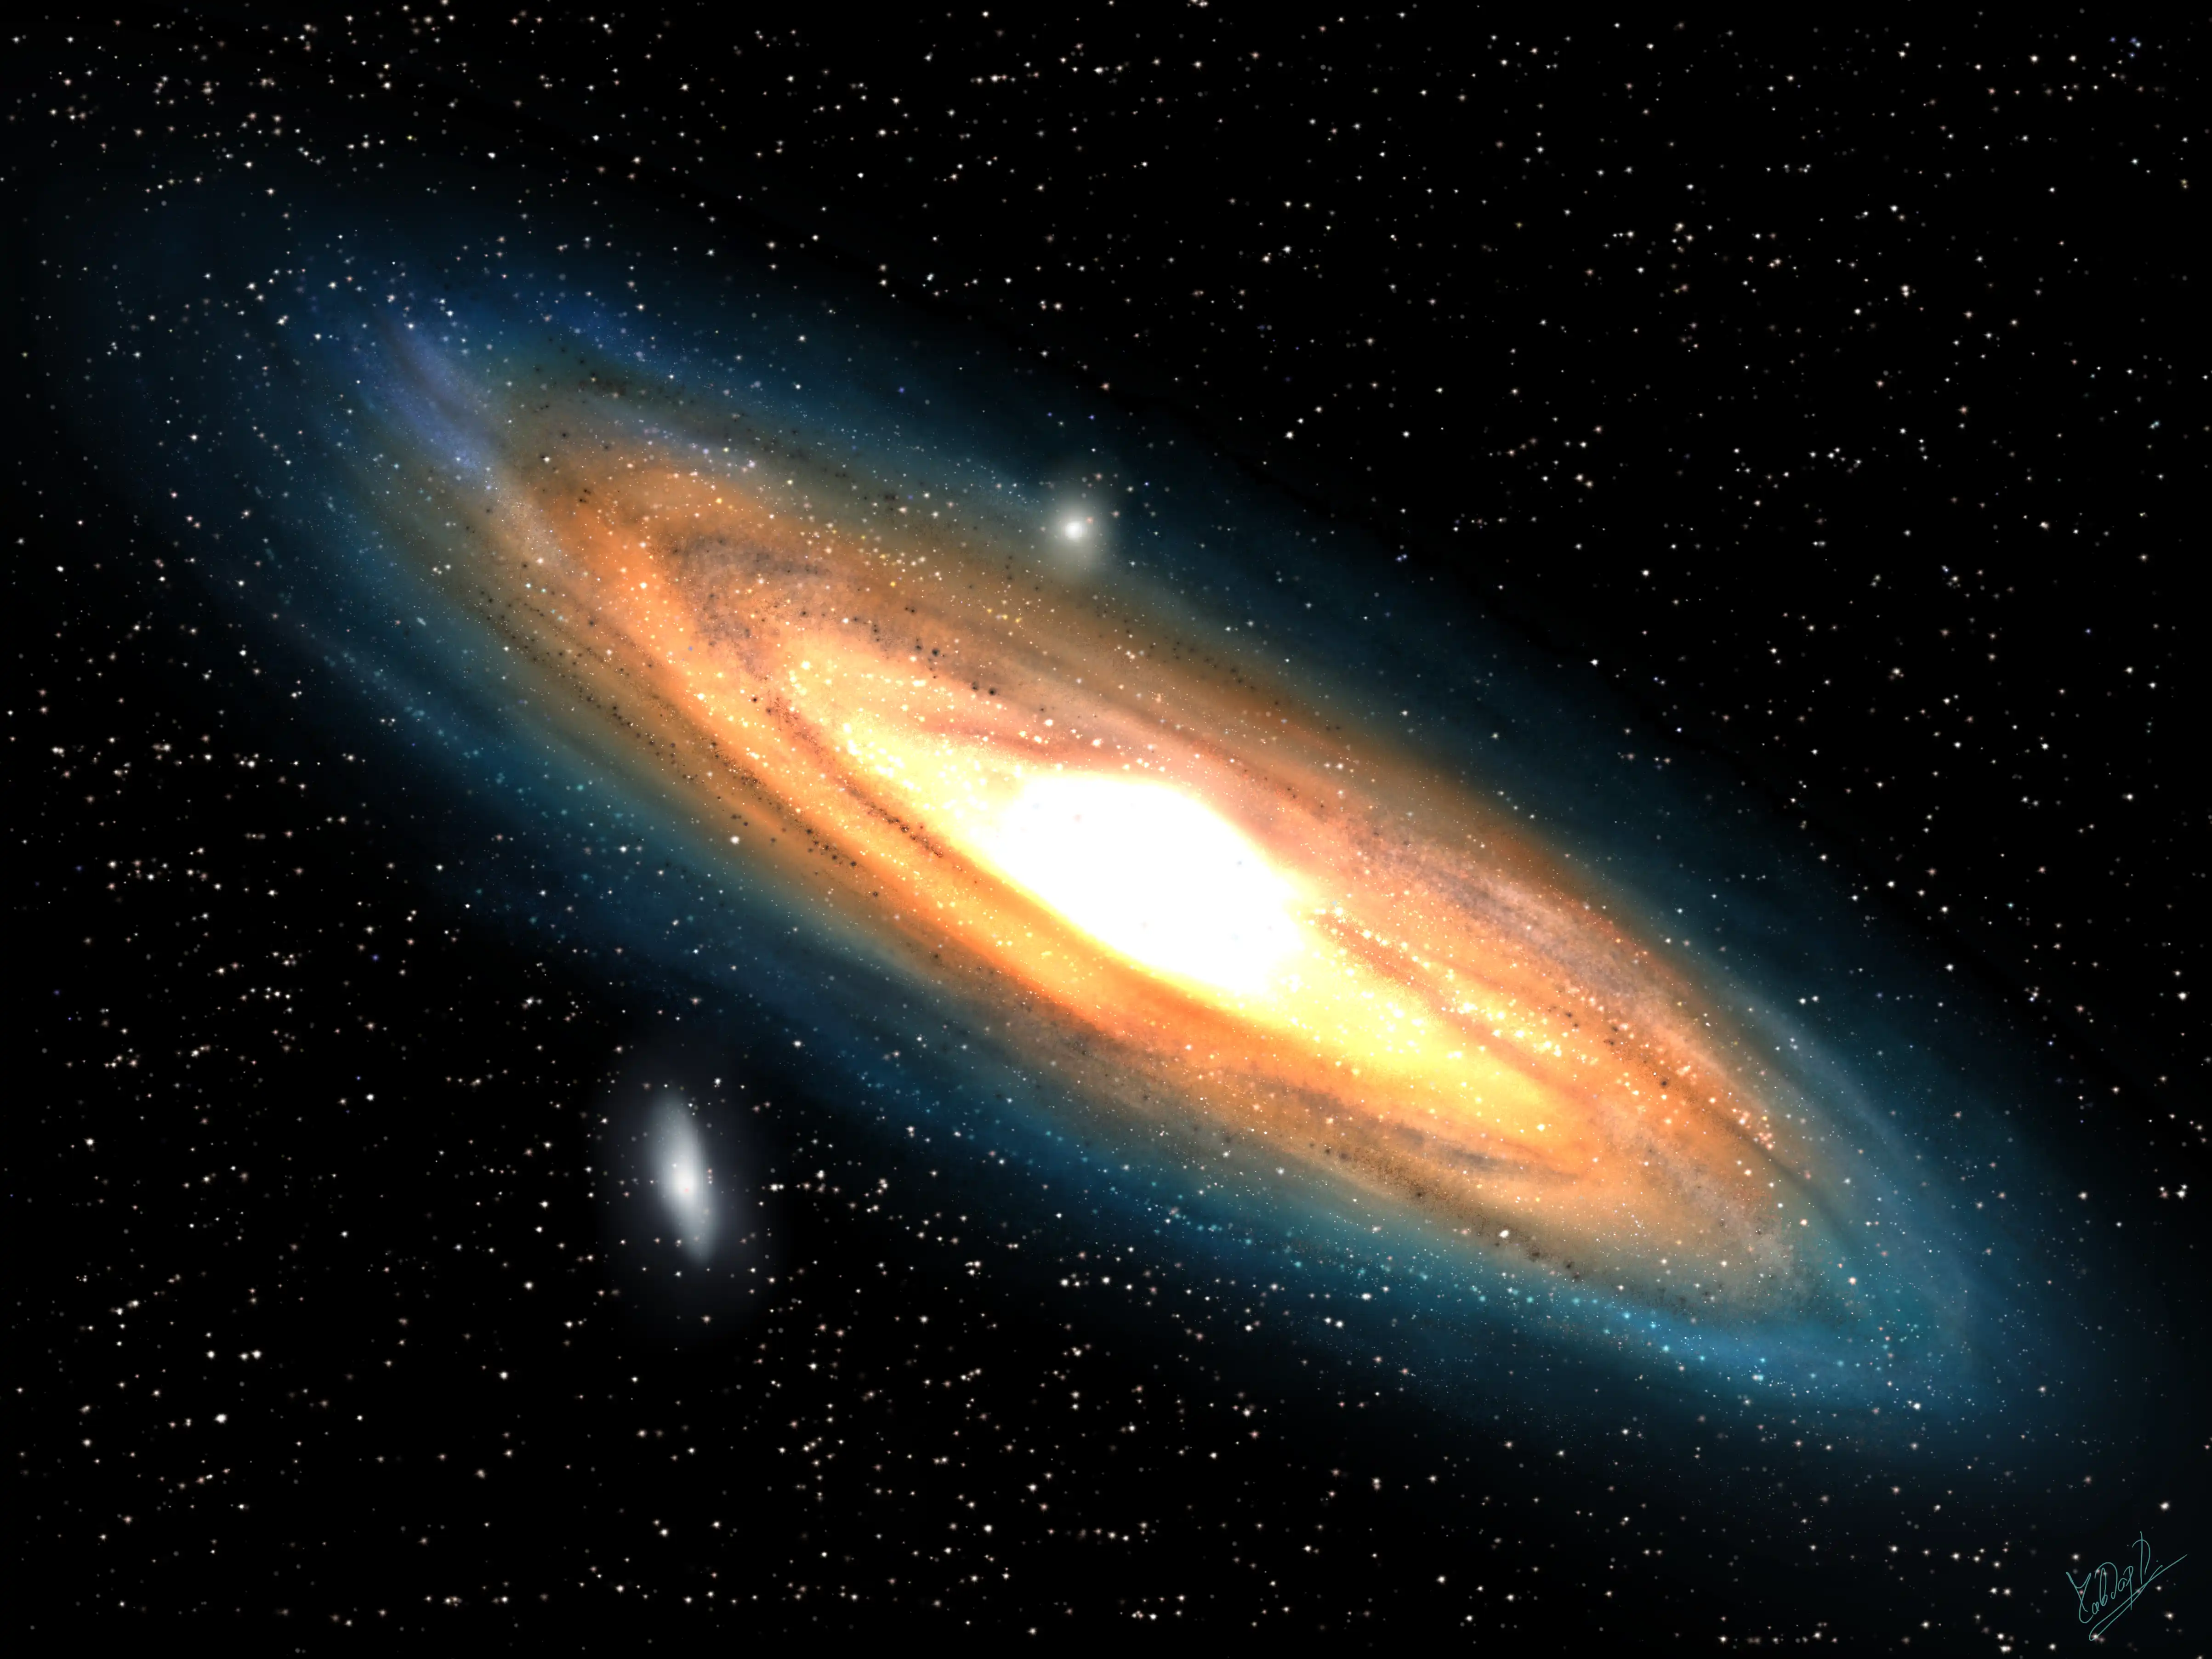 Drawing of M31 - Andromeda Galaxy